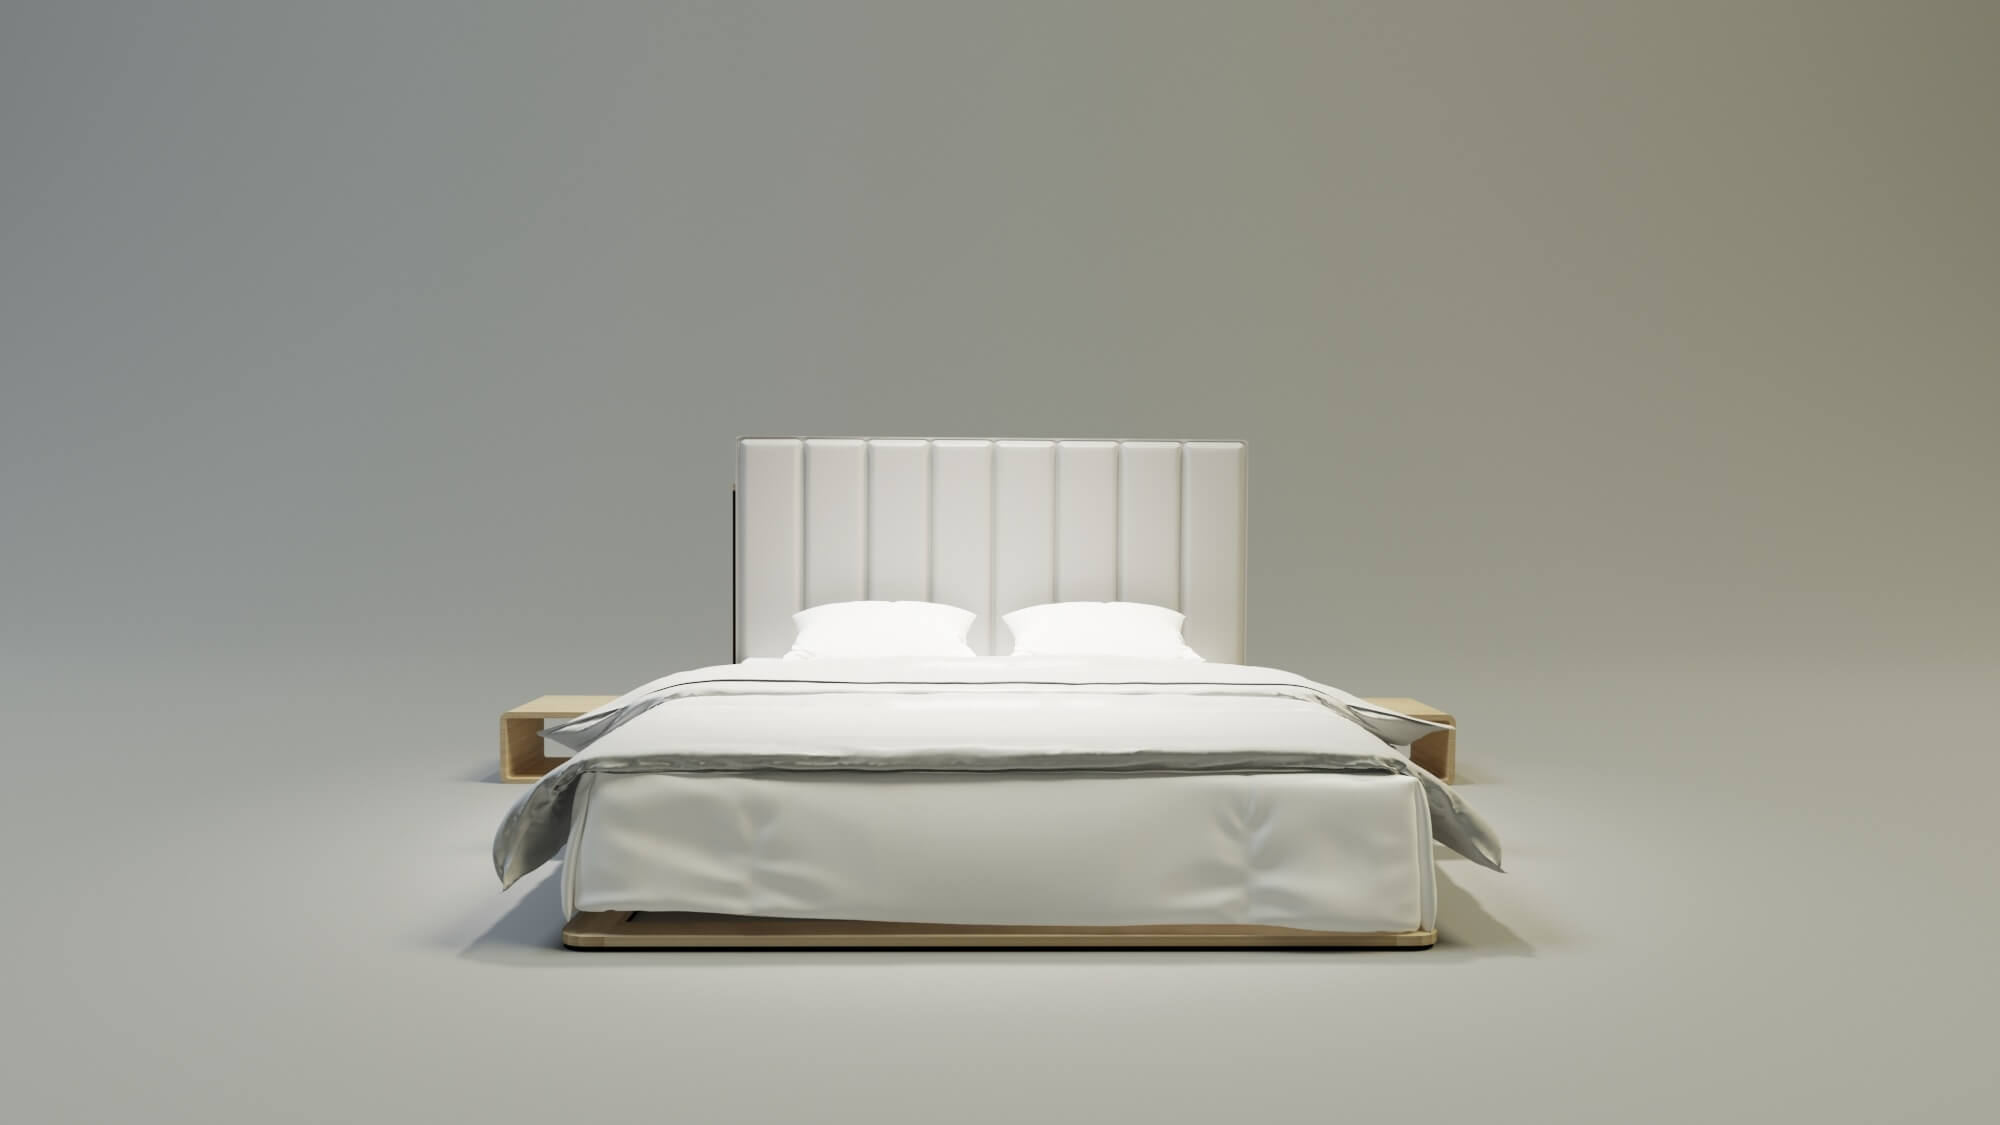 Łóżko drewniane Uniko